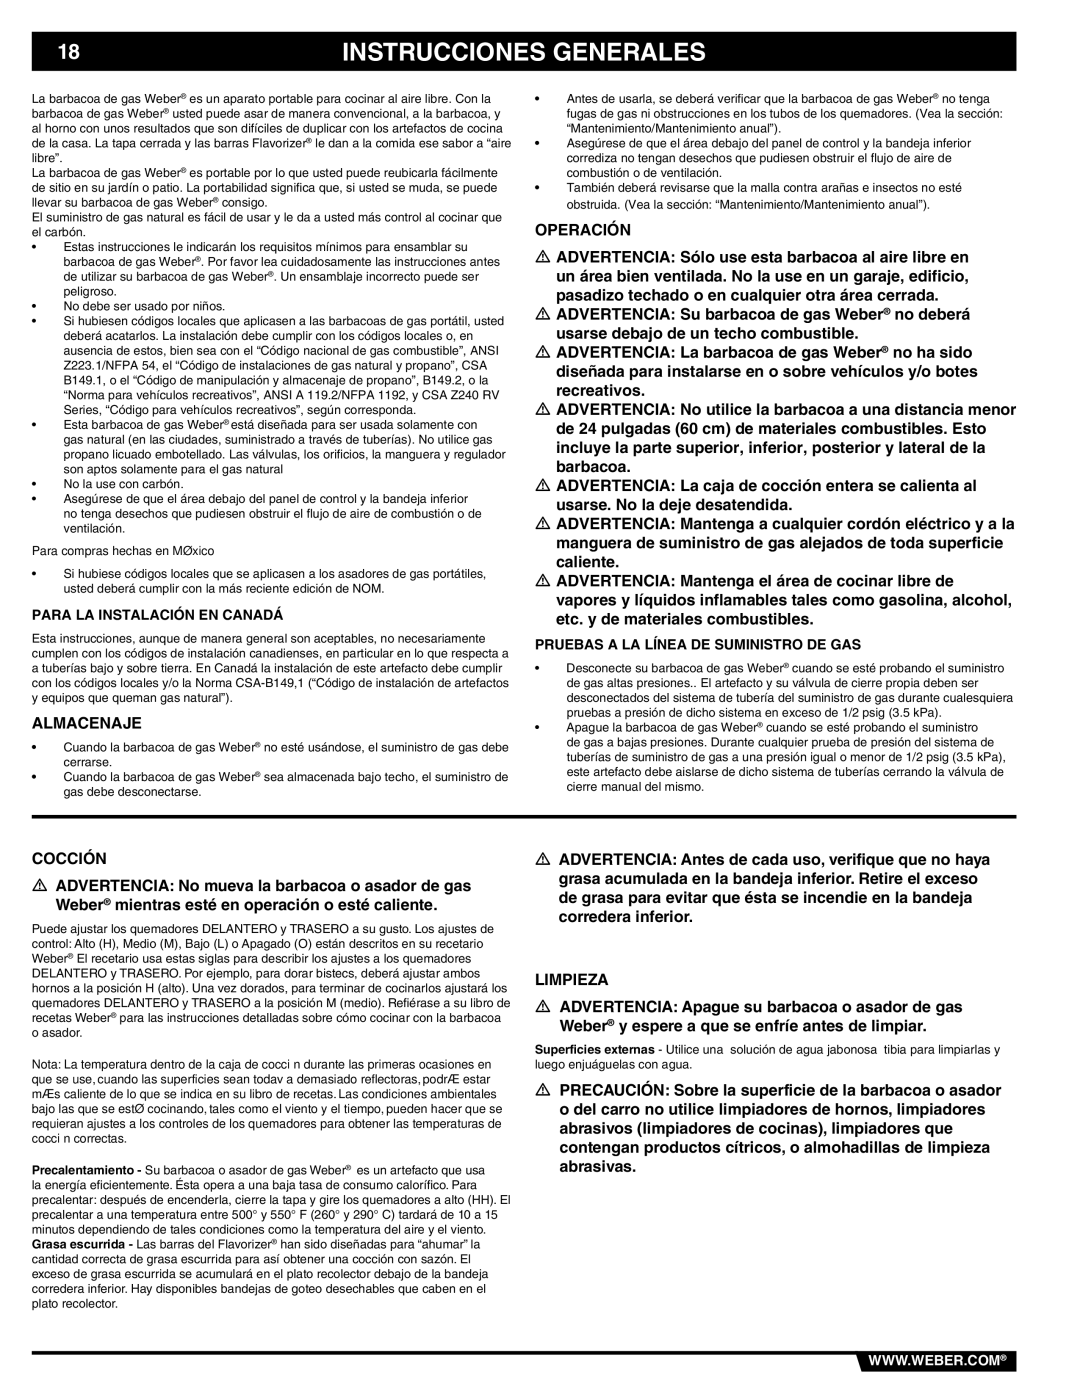 Weber 89839 manual Instrucciones Generales, Almacenaje, Operación, Cocción, Limpieza 